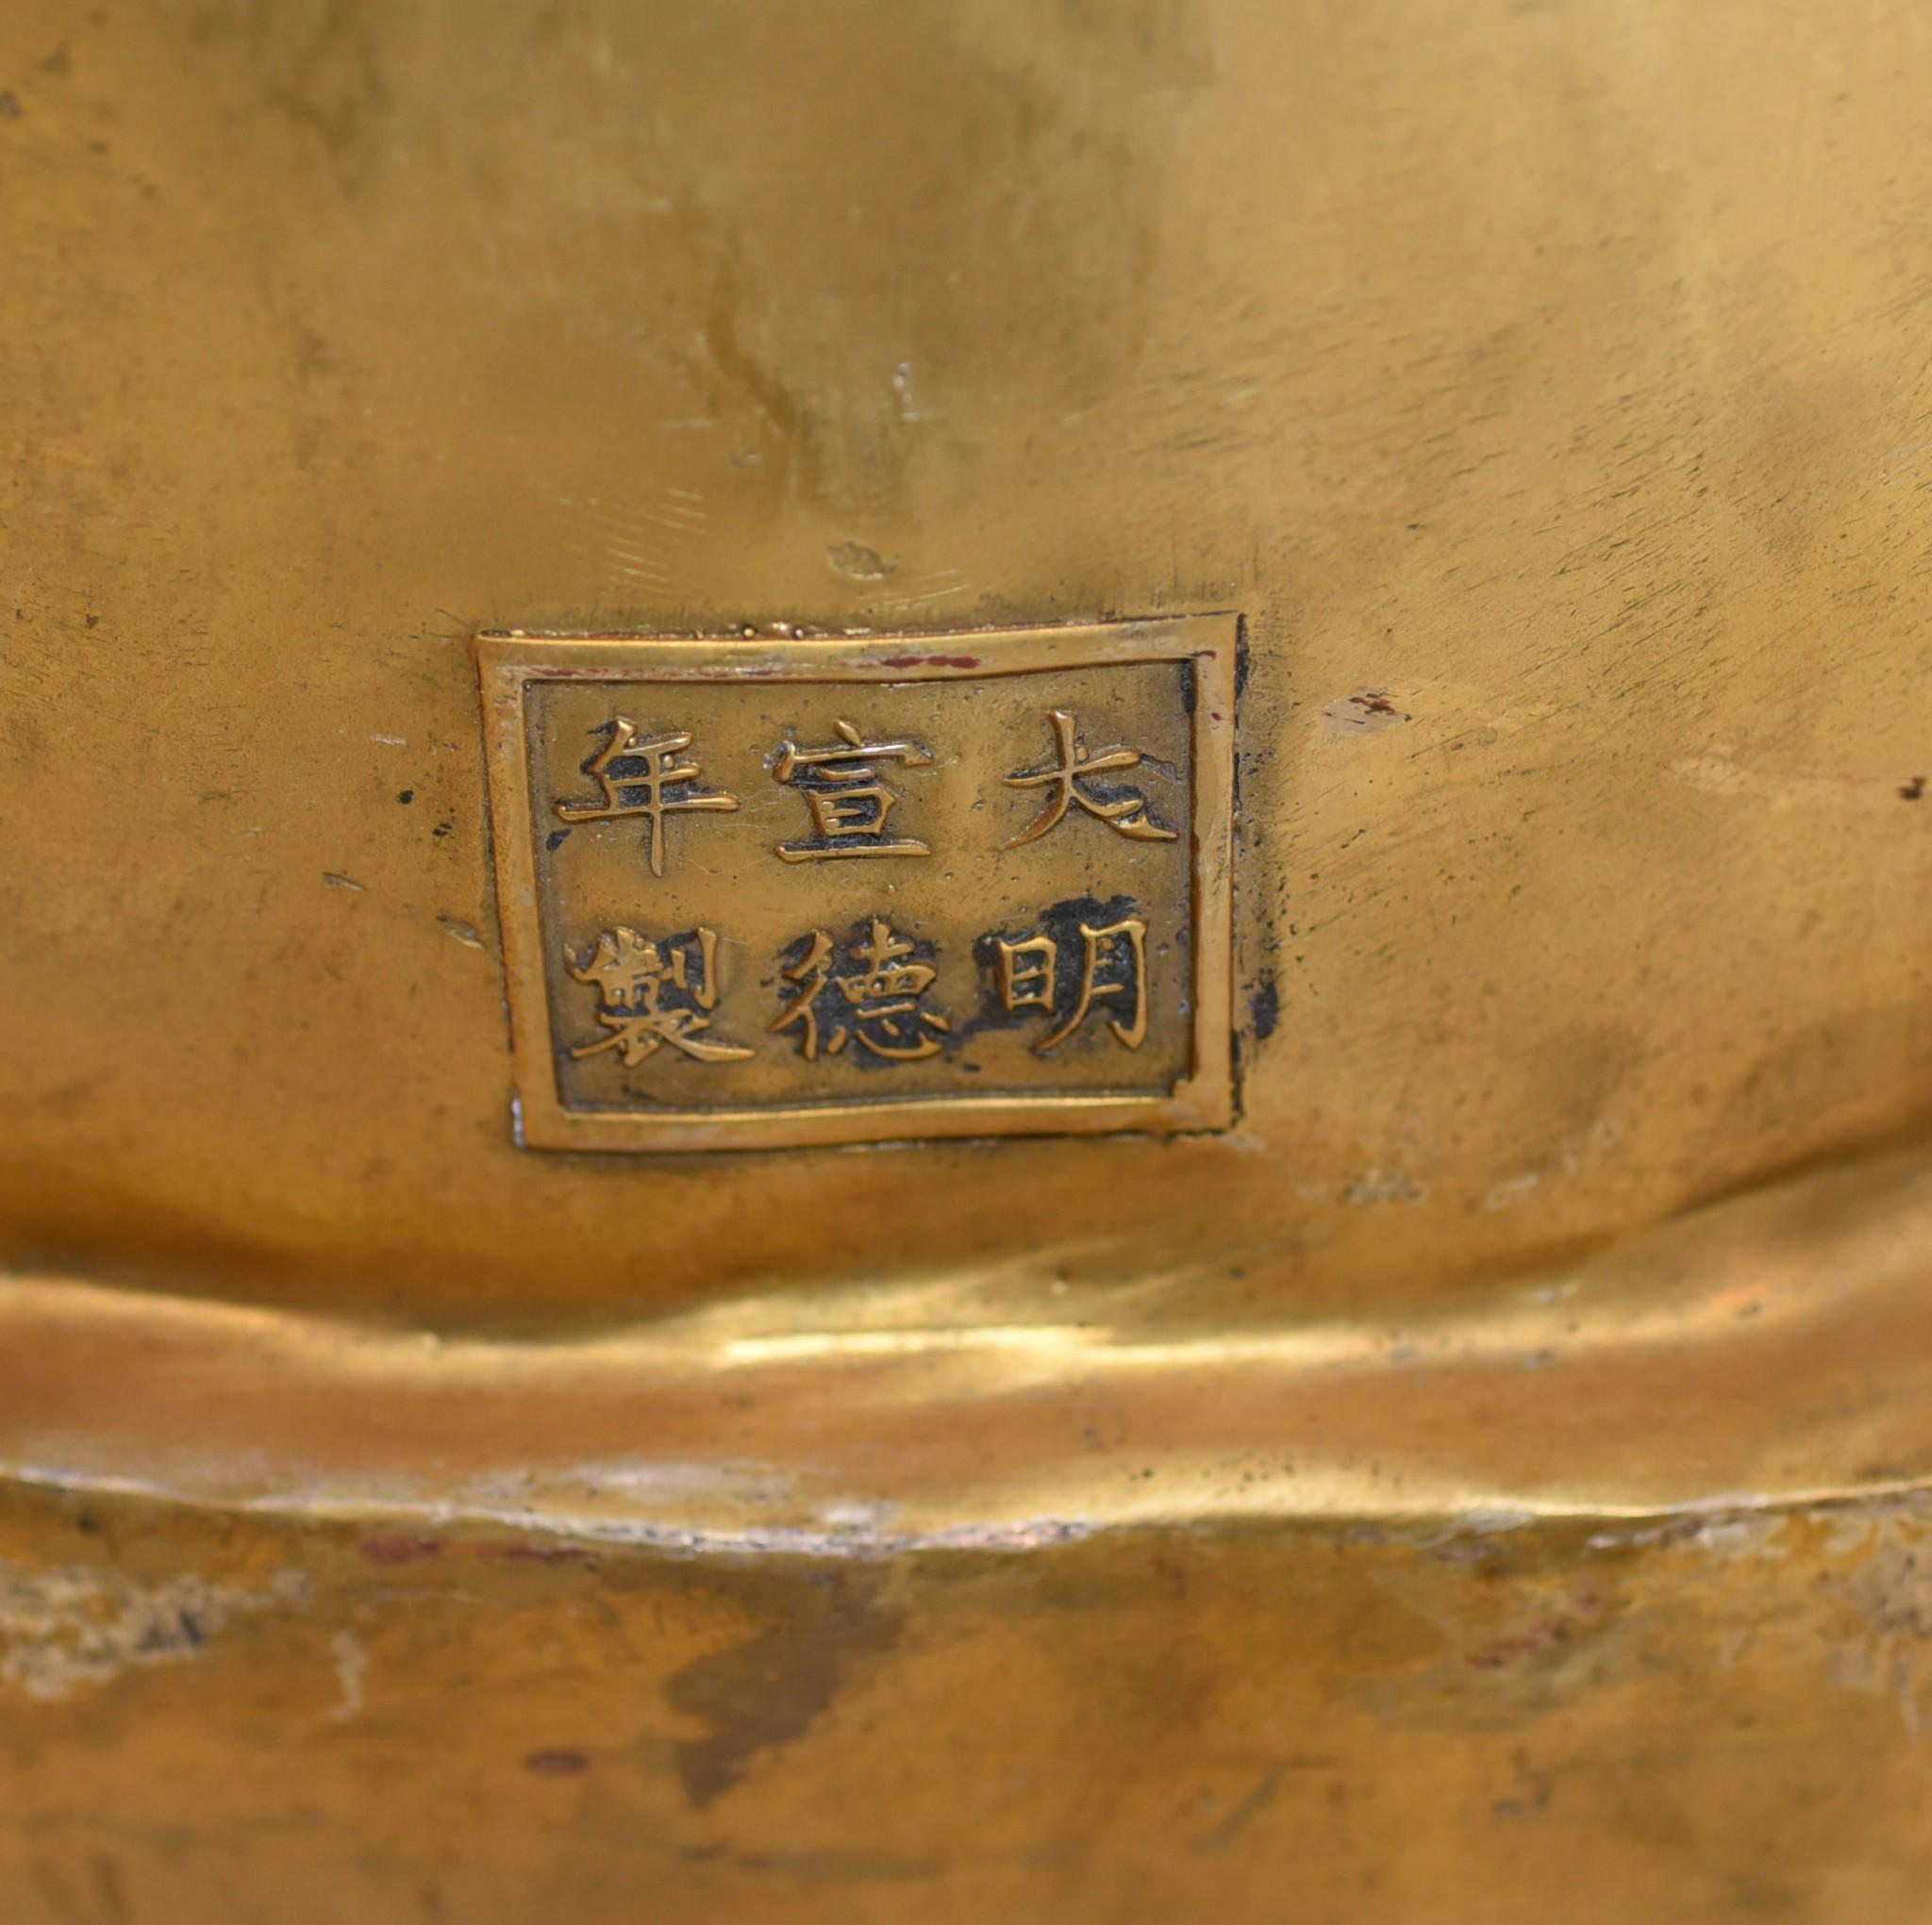 Wunderschöner großer Bronzeguss eines burmesischen Buddhas
In klassischer Meditationshaltung auf einem Lotusthron sitzend
Gute Größe mit über einem Meter Höhe (99 CM)
Da es sich um Bronze handelt, kann es im Freien leben, ohne zu rosten.
Bitte